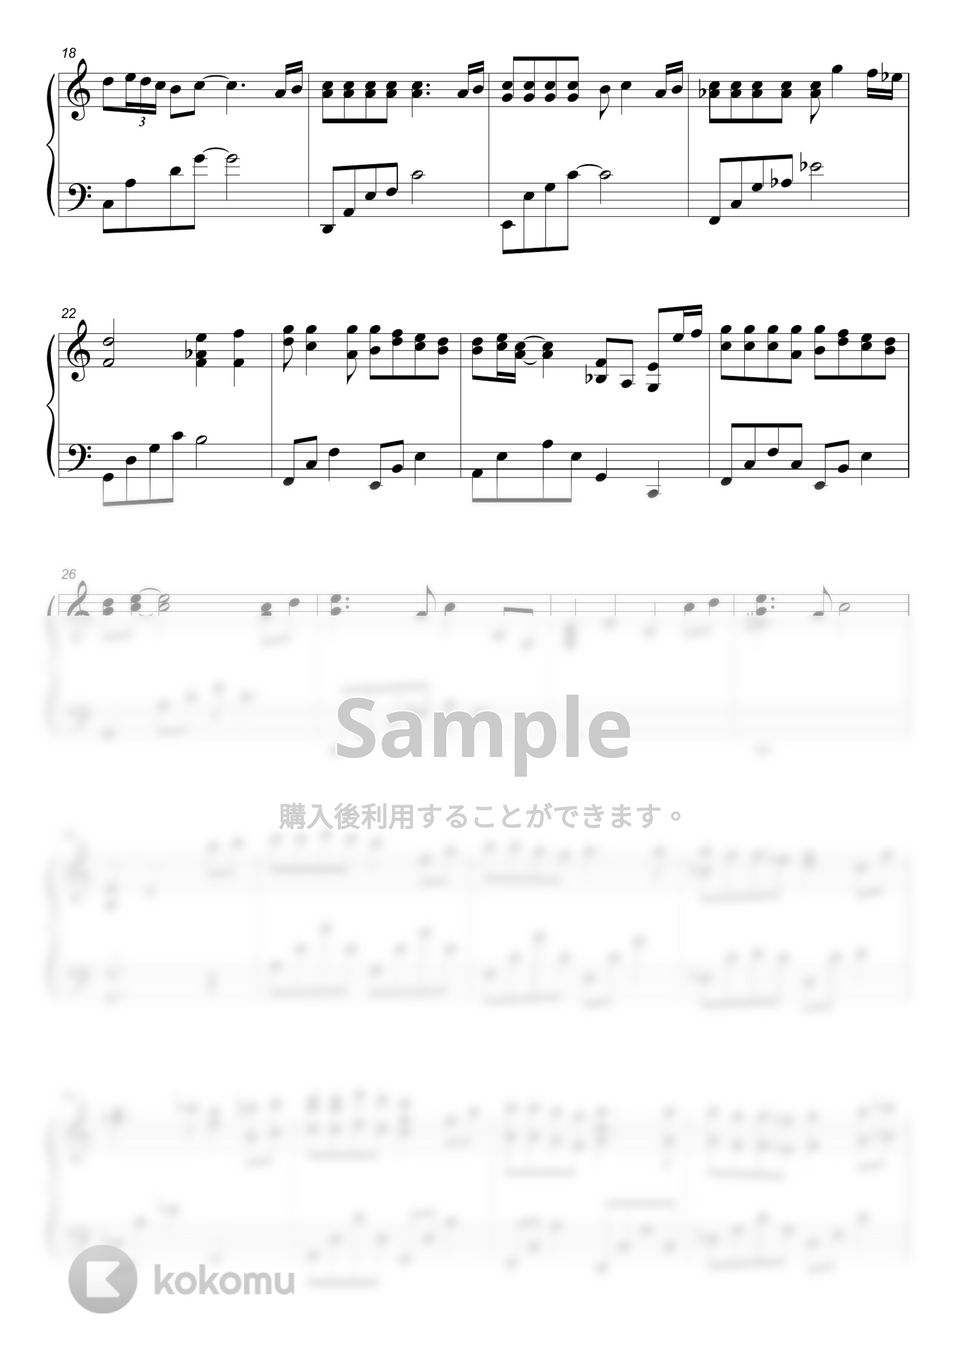 Joe Hisaishi - One Summer's Day (PIANO COVER) by HANPPYEOMPIANO